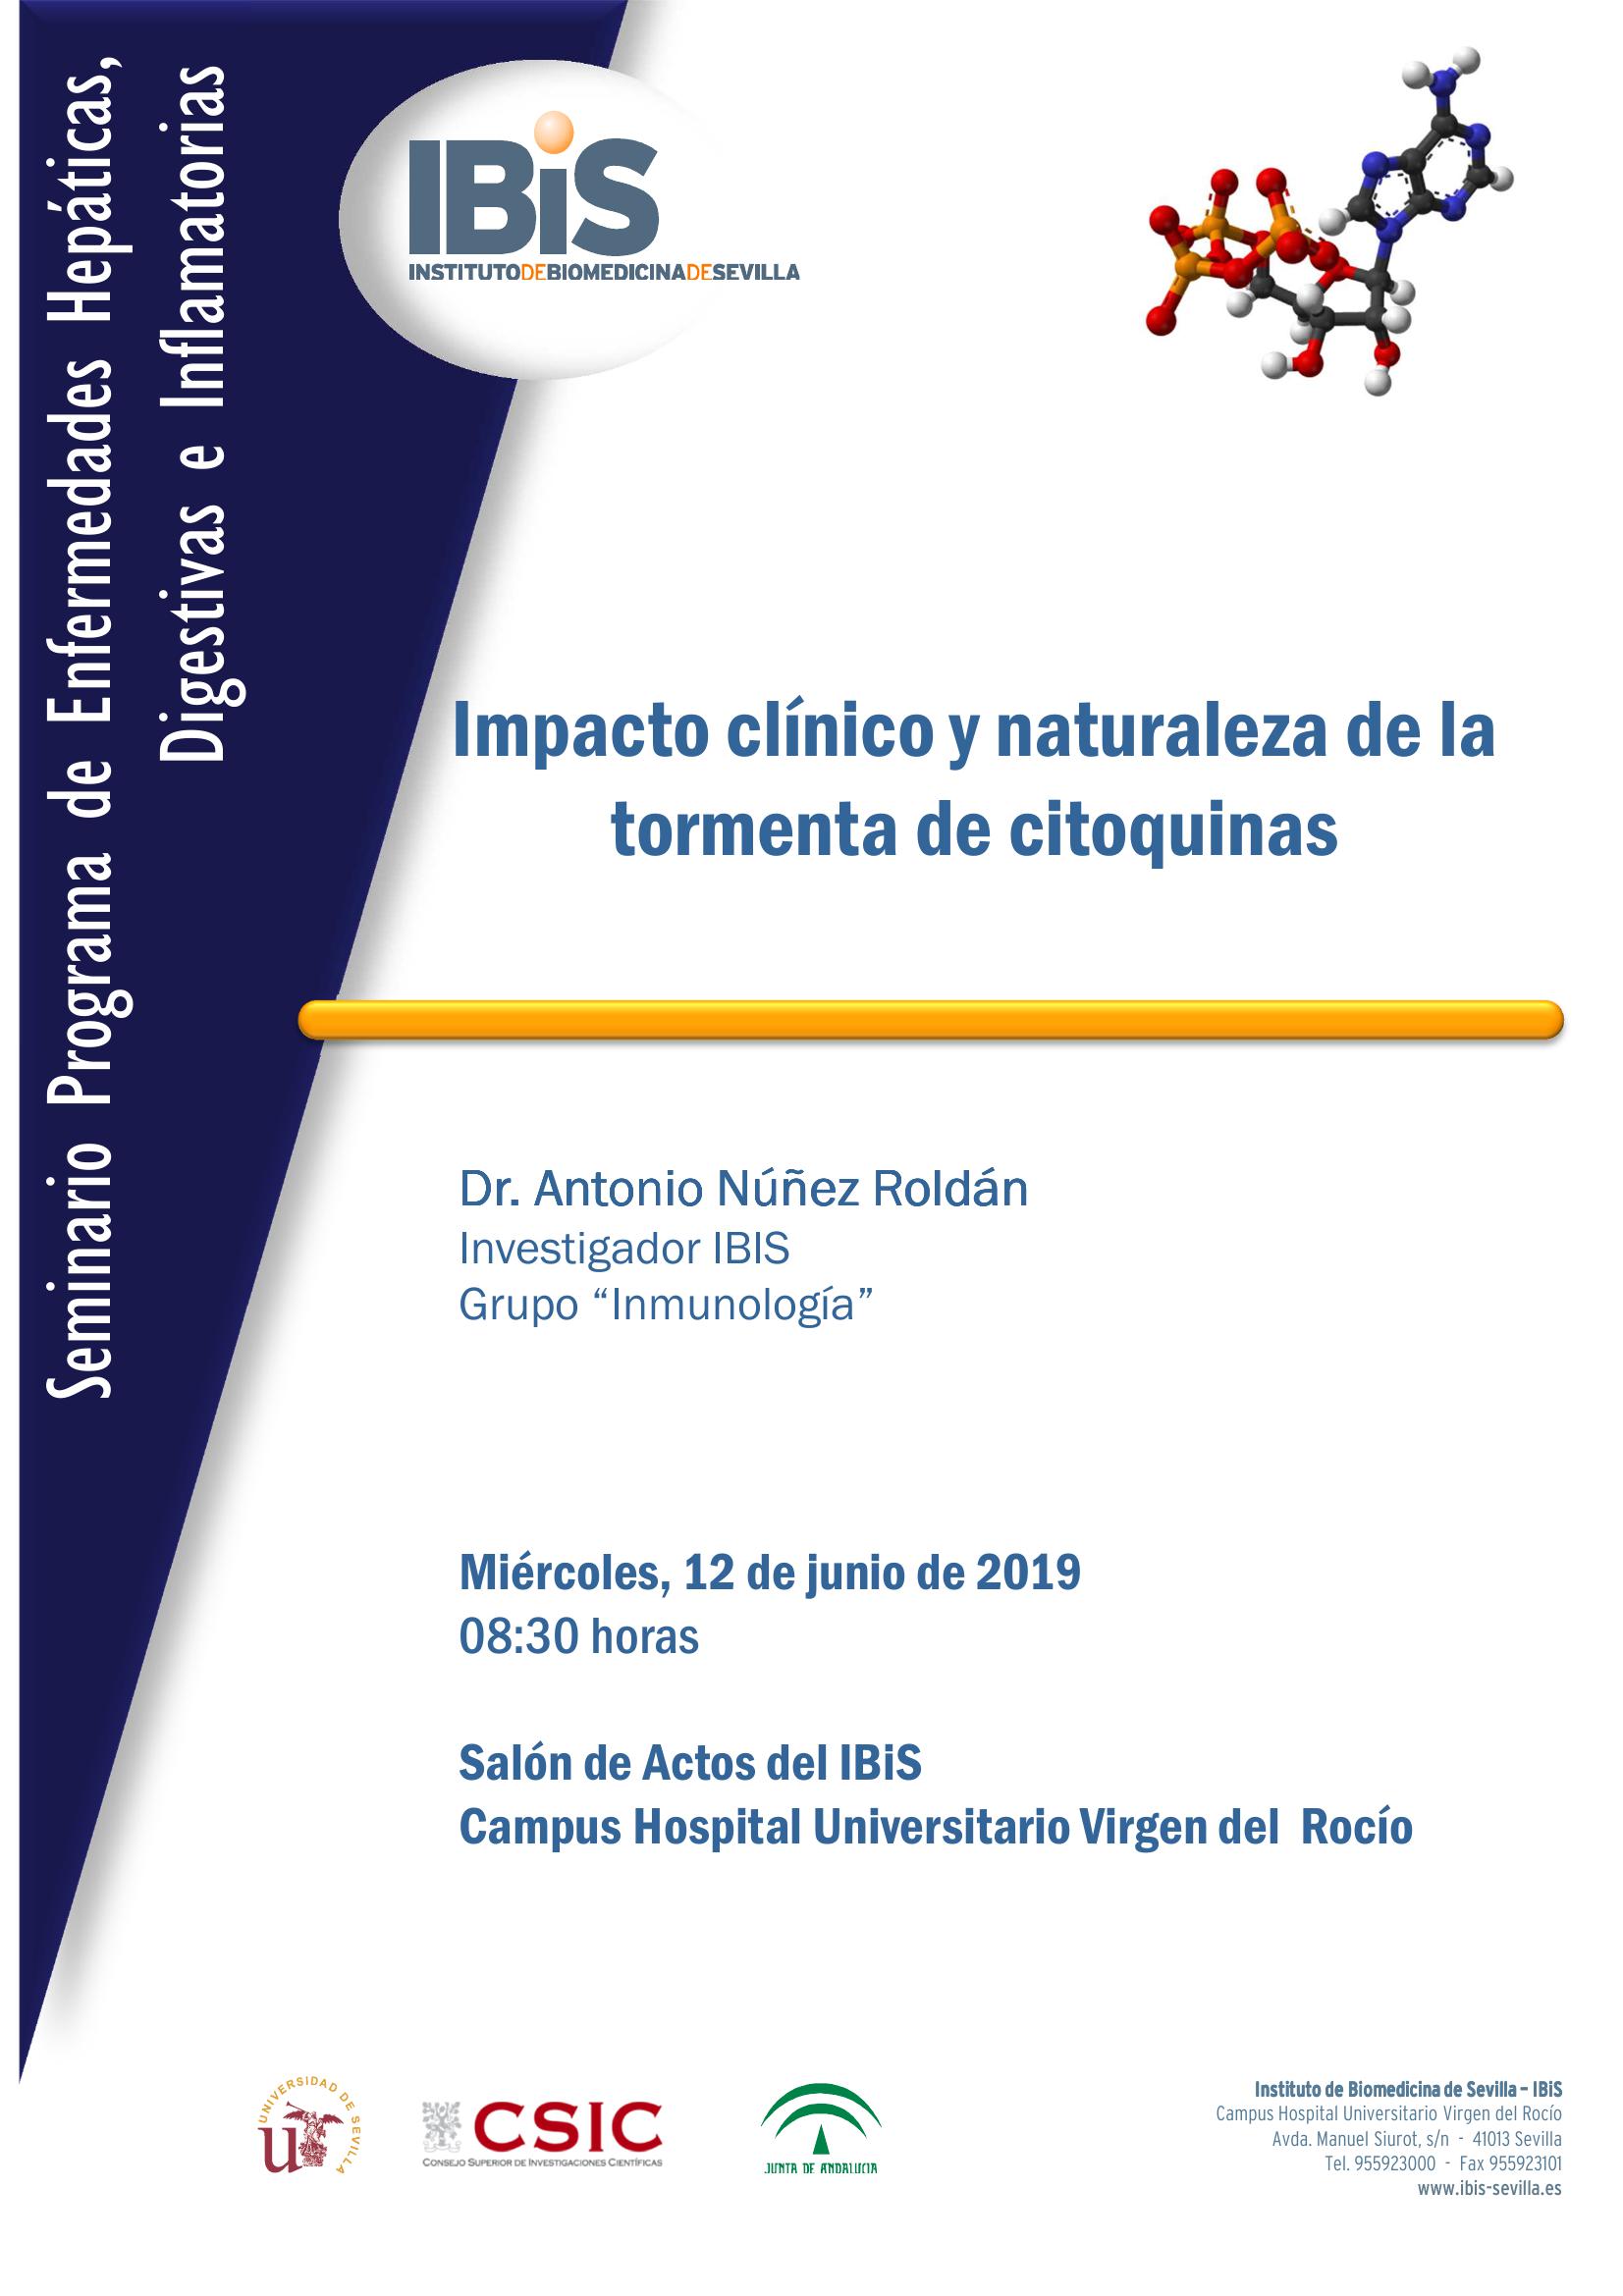 Poster: Impacto clínico y naturaleza de la tormenta de citoquinas